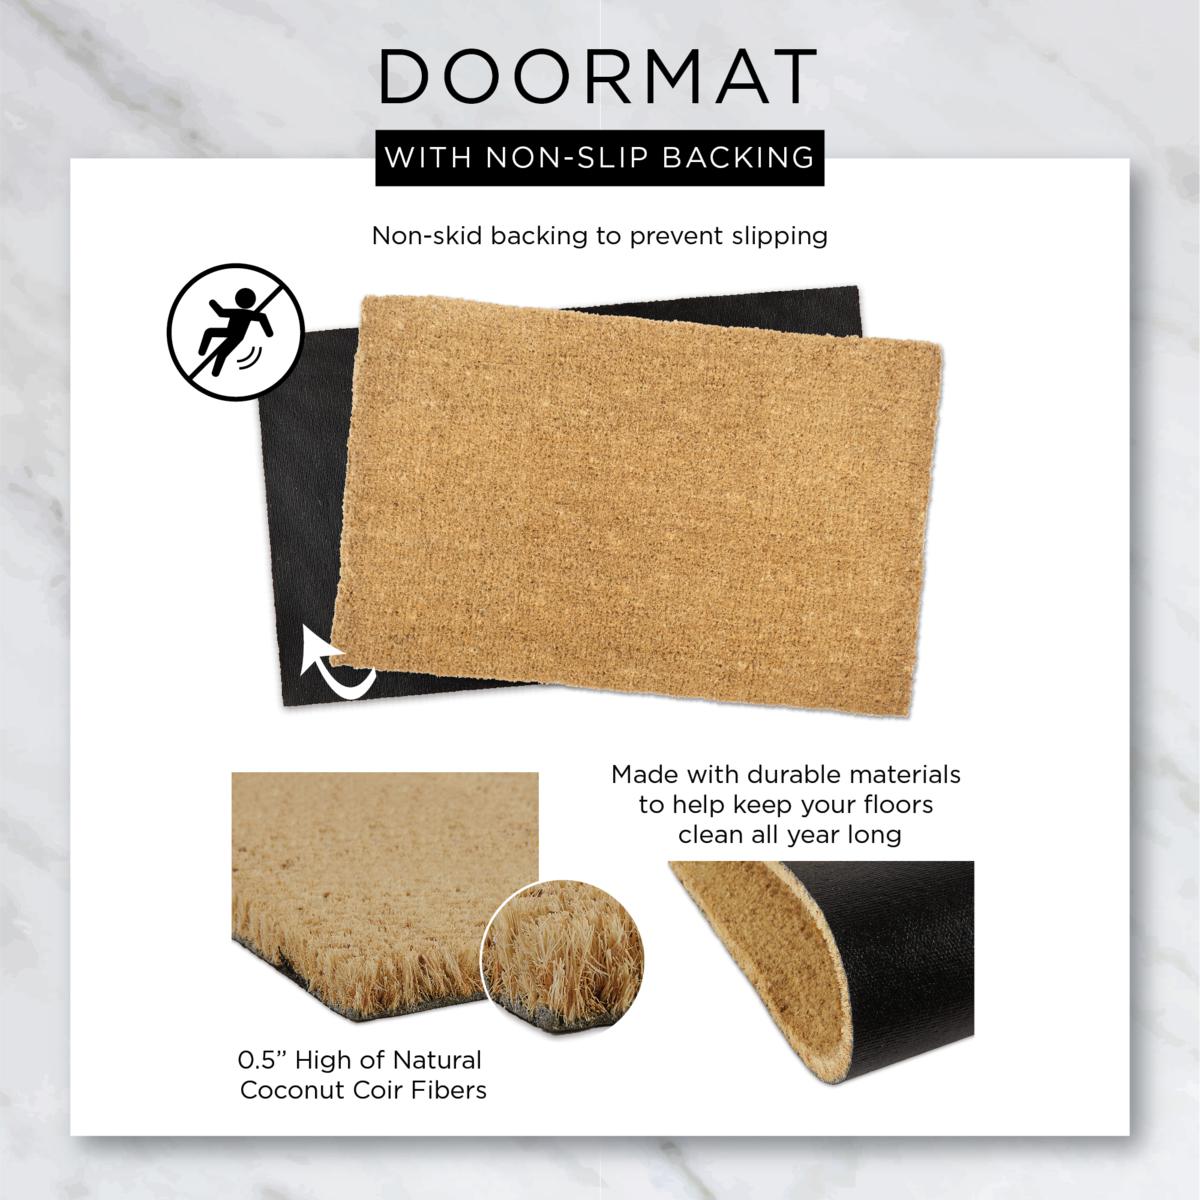 Design Imports Pot Of Gold Glitter 18 x 30 Doormat 